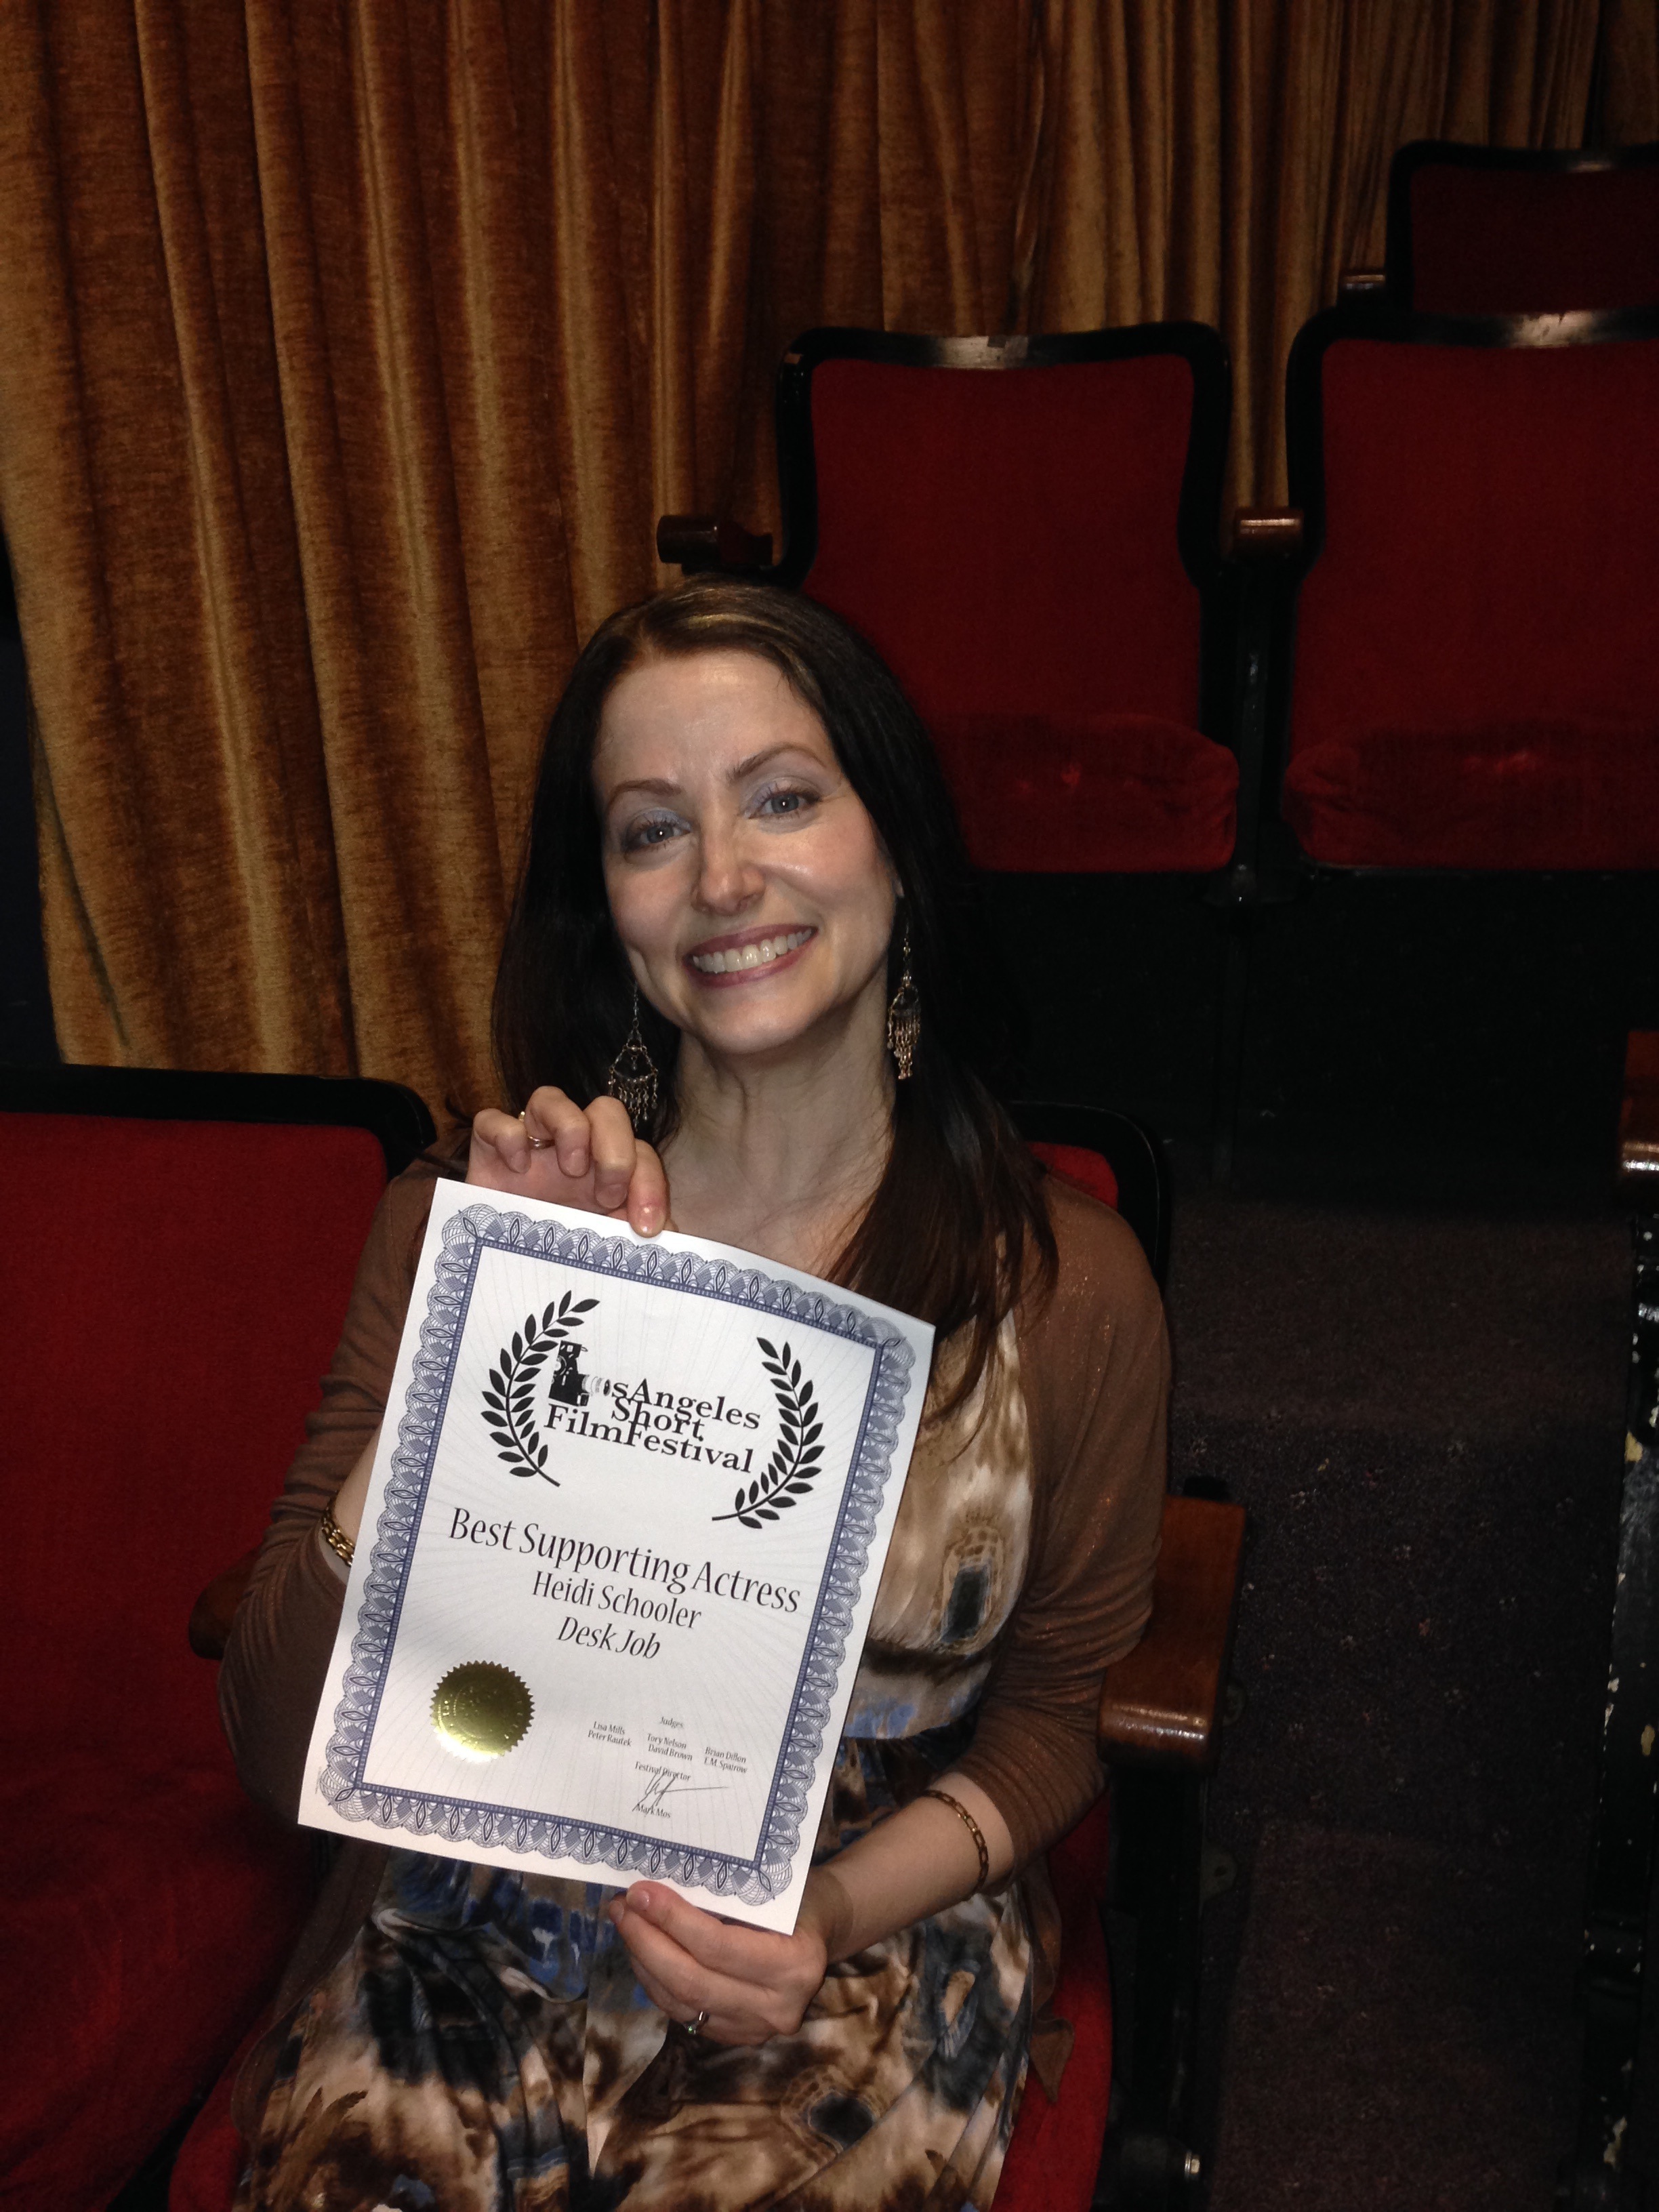 Heidi Schooler wins Best Supporting Actress in film 